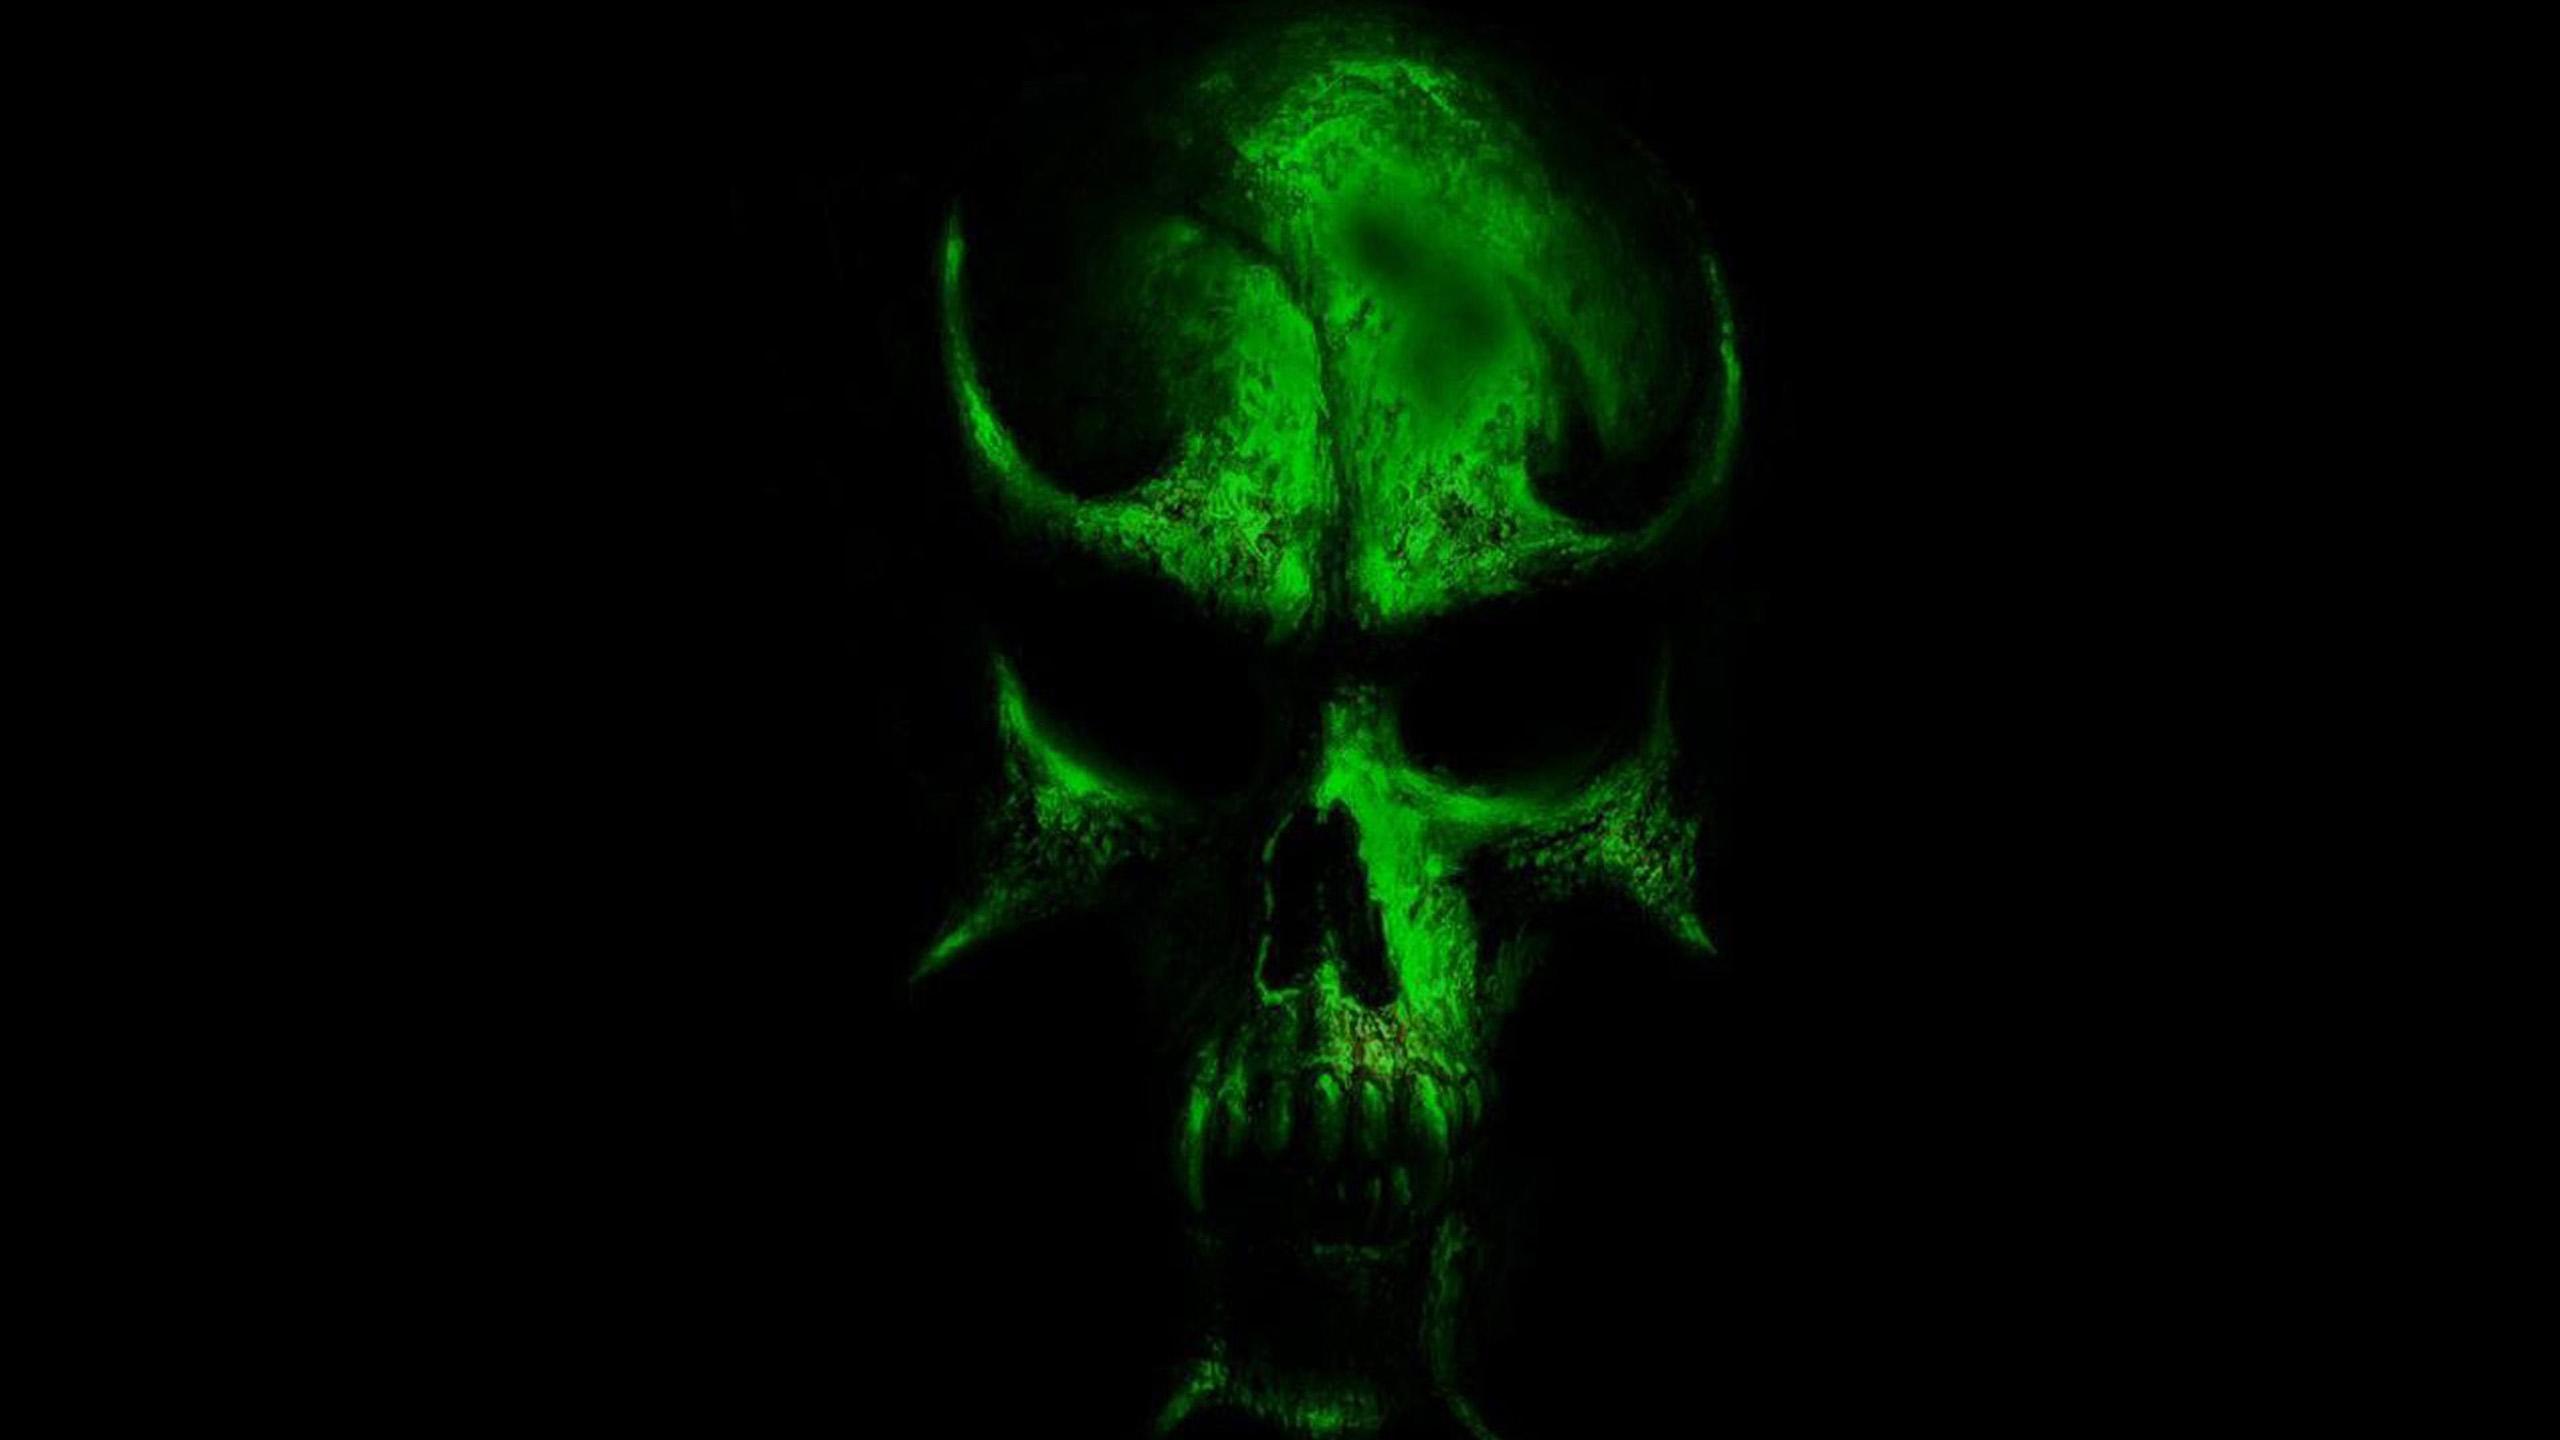 Neon Skull Wallpapers - Wallpaper Cave 3d Skull Wallpaper Hd